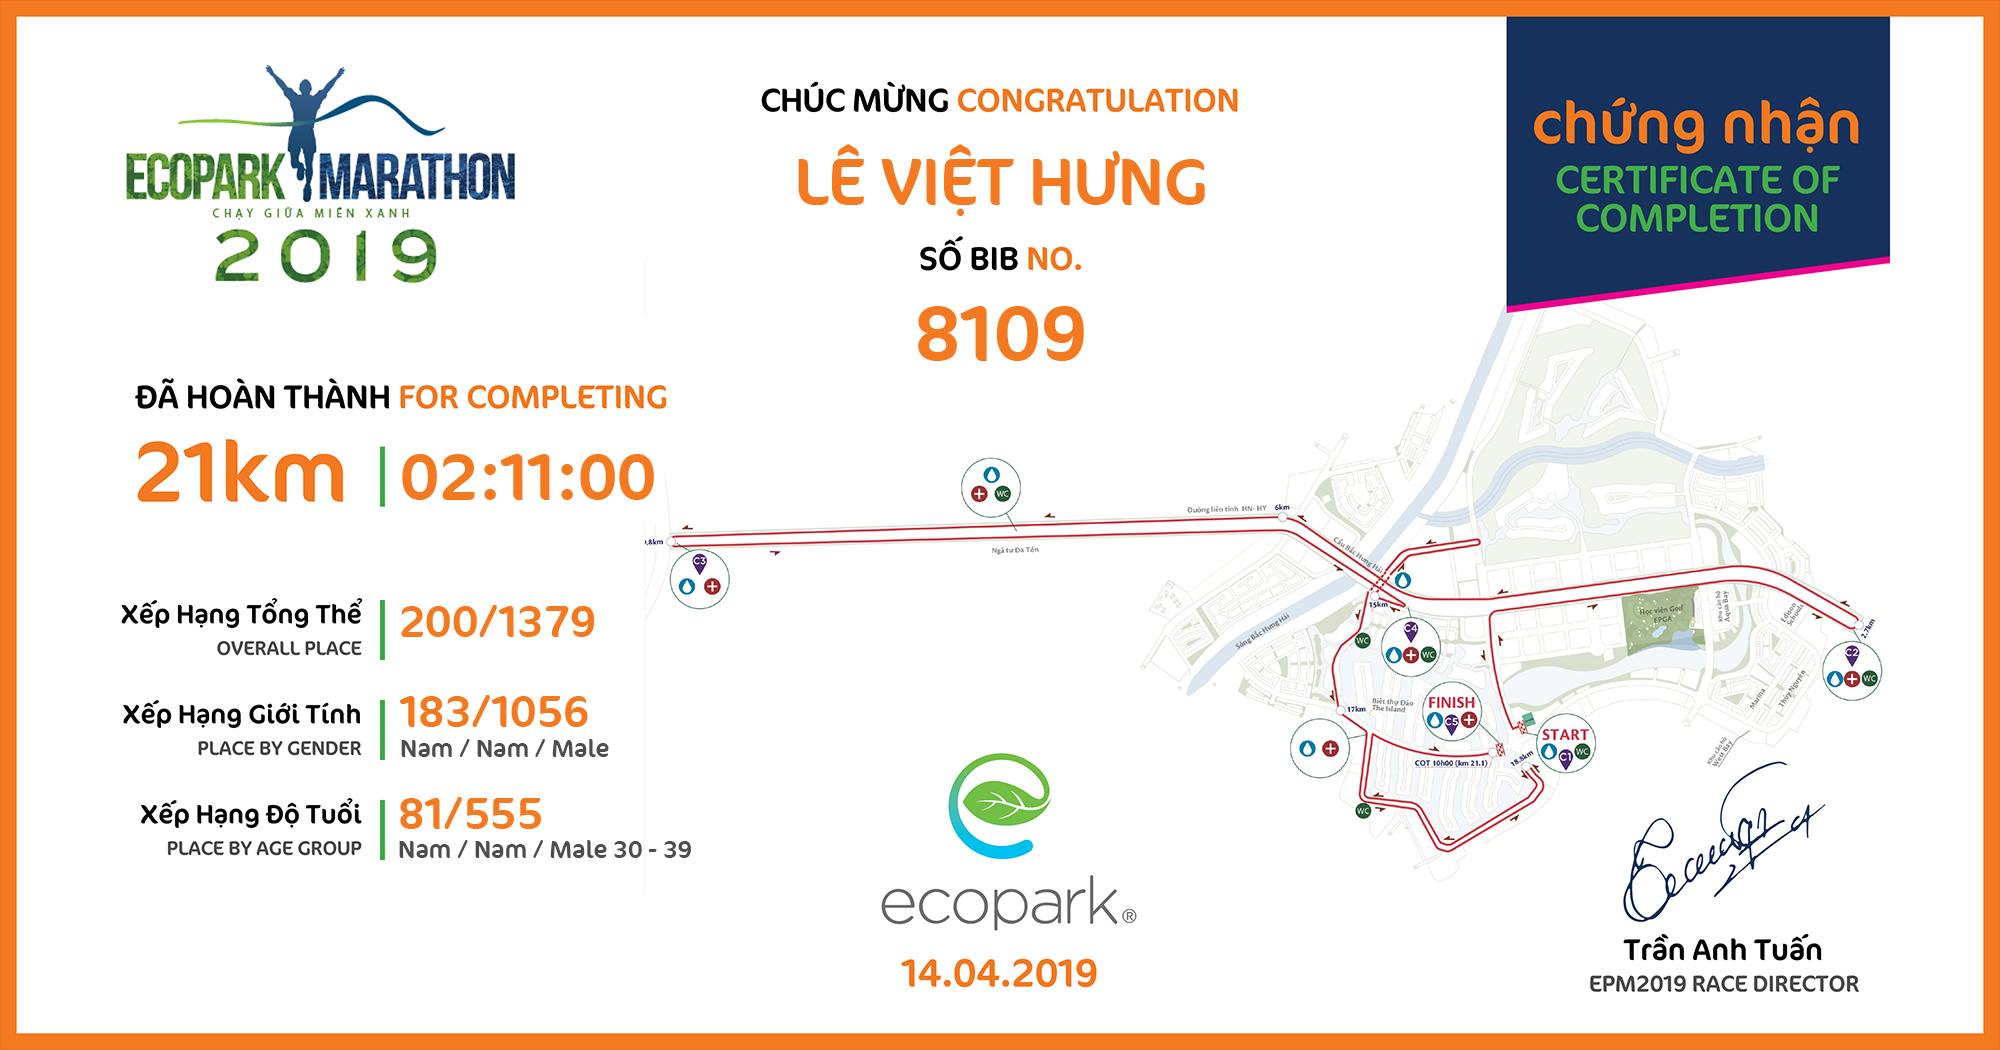 8109 - Lê Việt Hưng